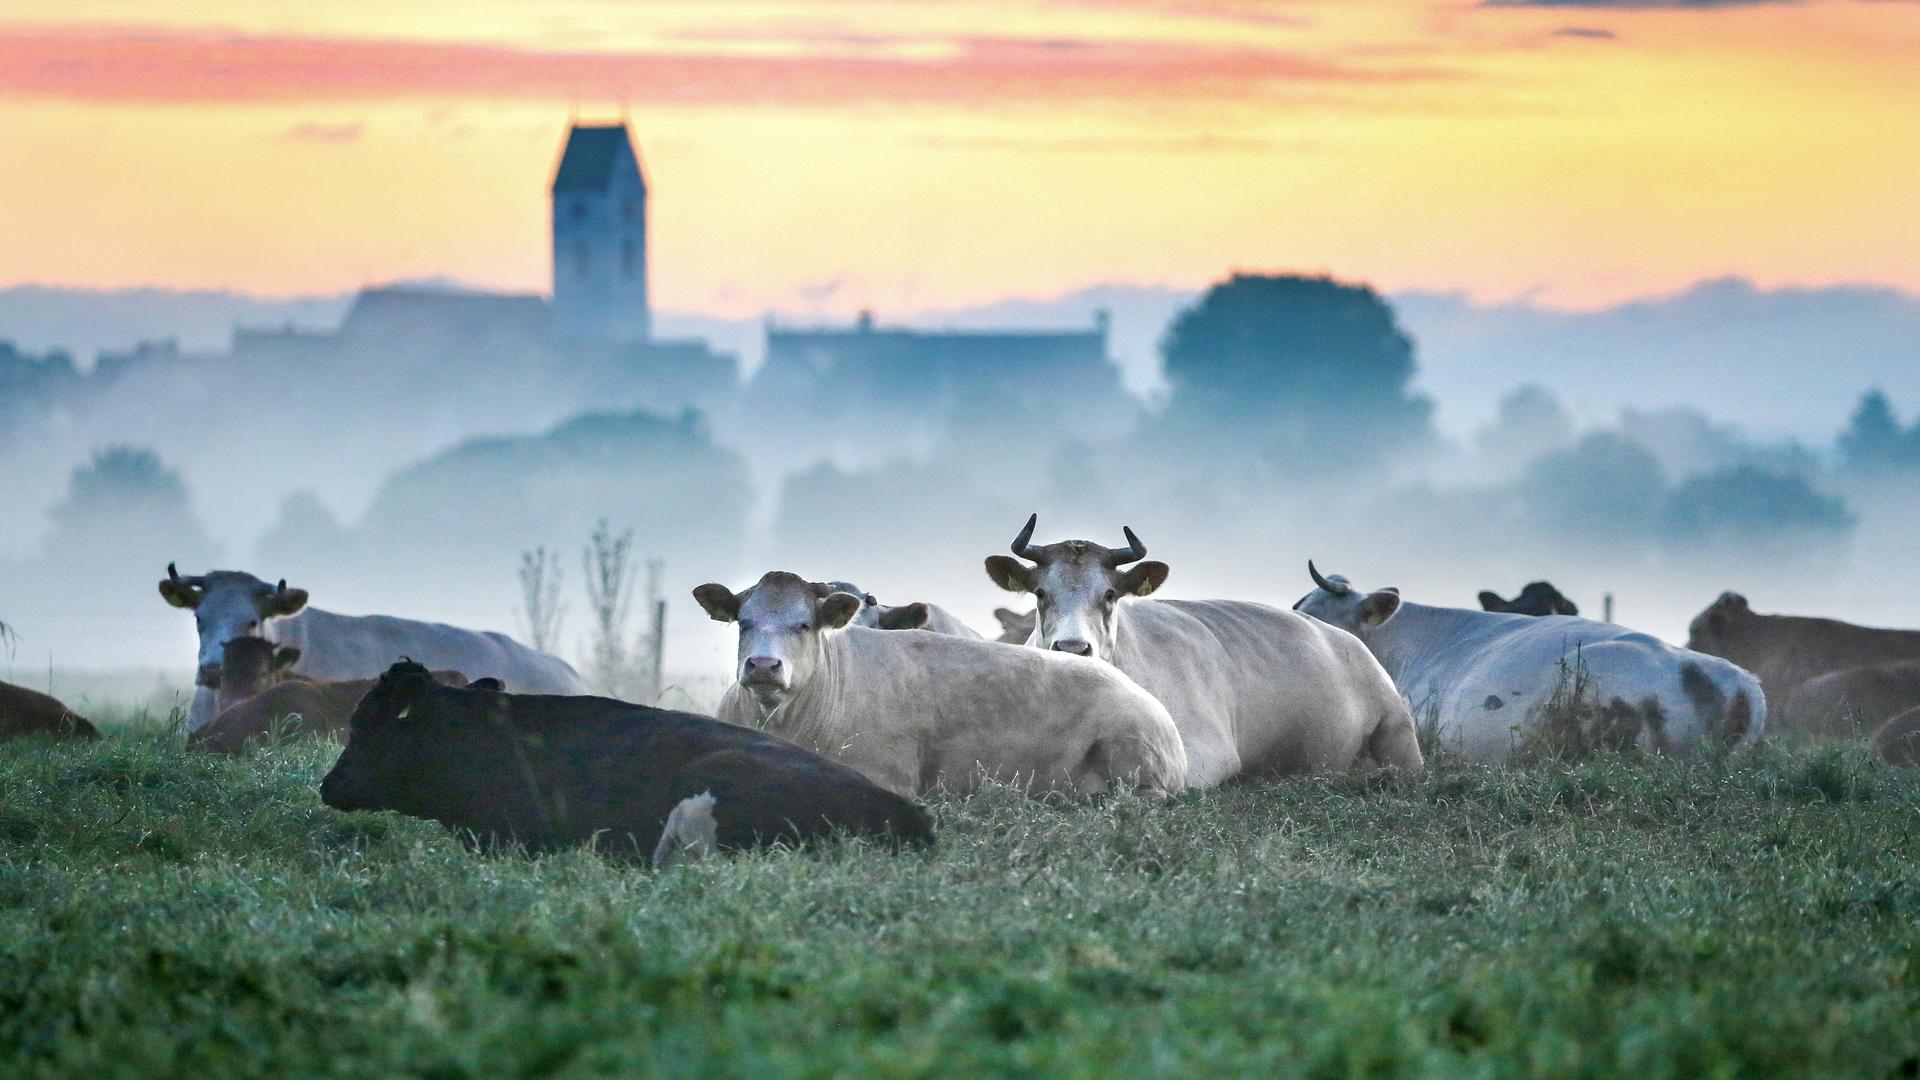 Kühe liegen kurz vor Sonnenaufgang auf einer Weide. Im Hintergrund ist im Morgennebel ein Kirchturm zu erkennen